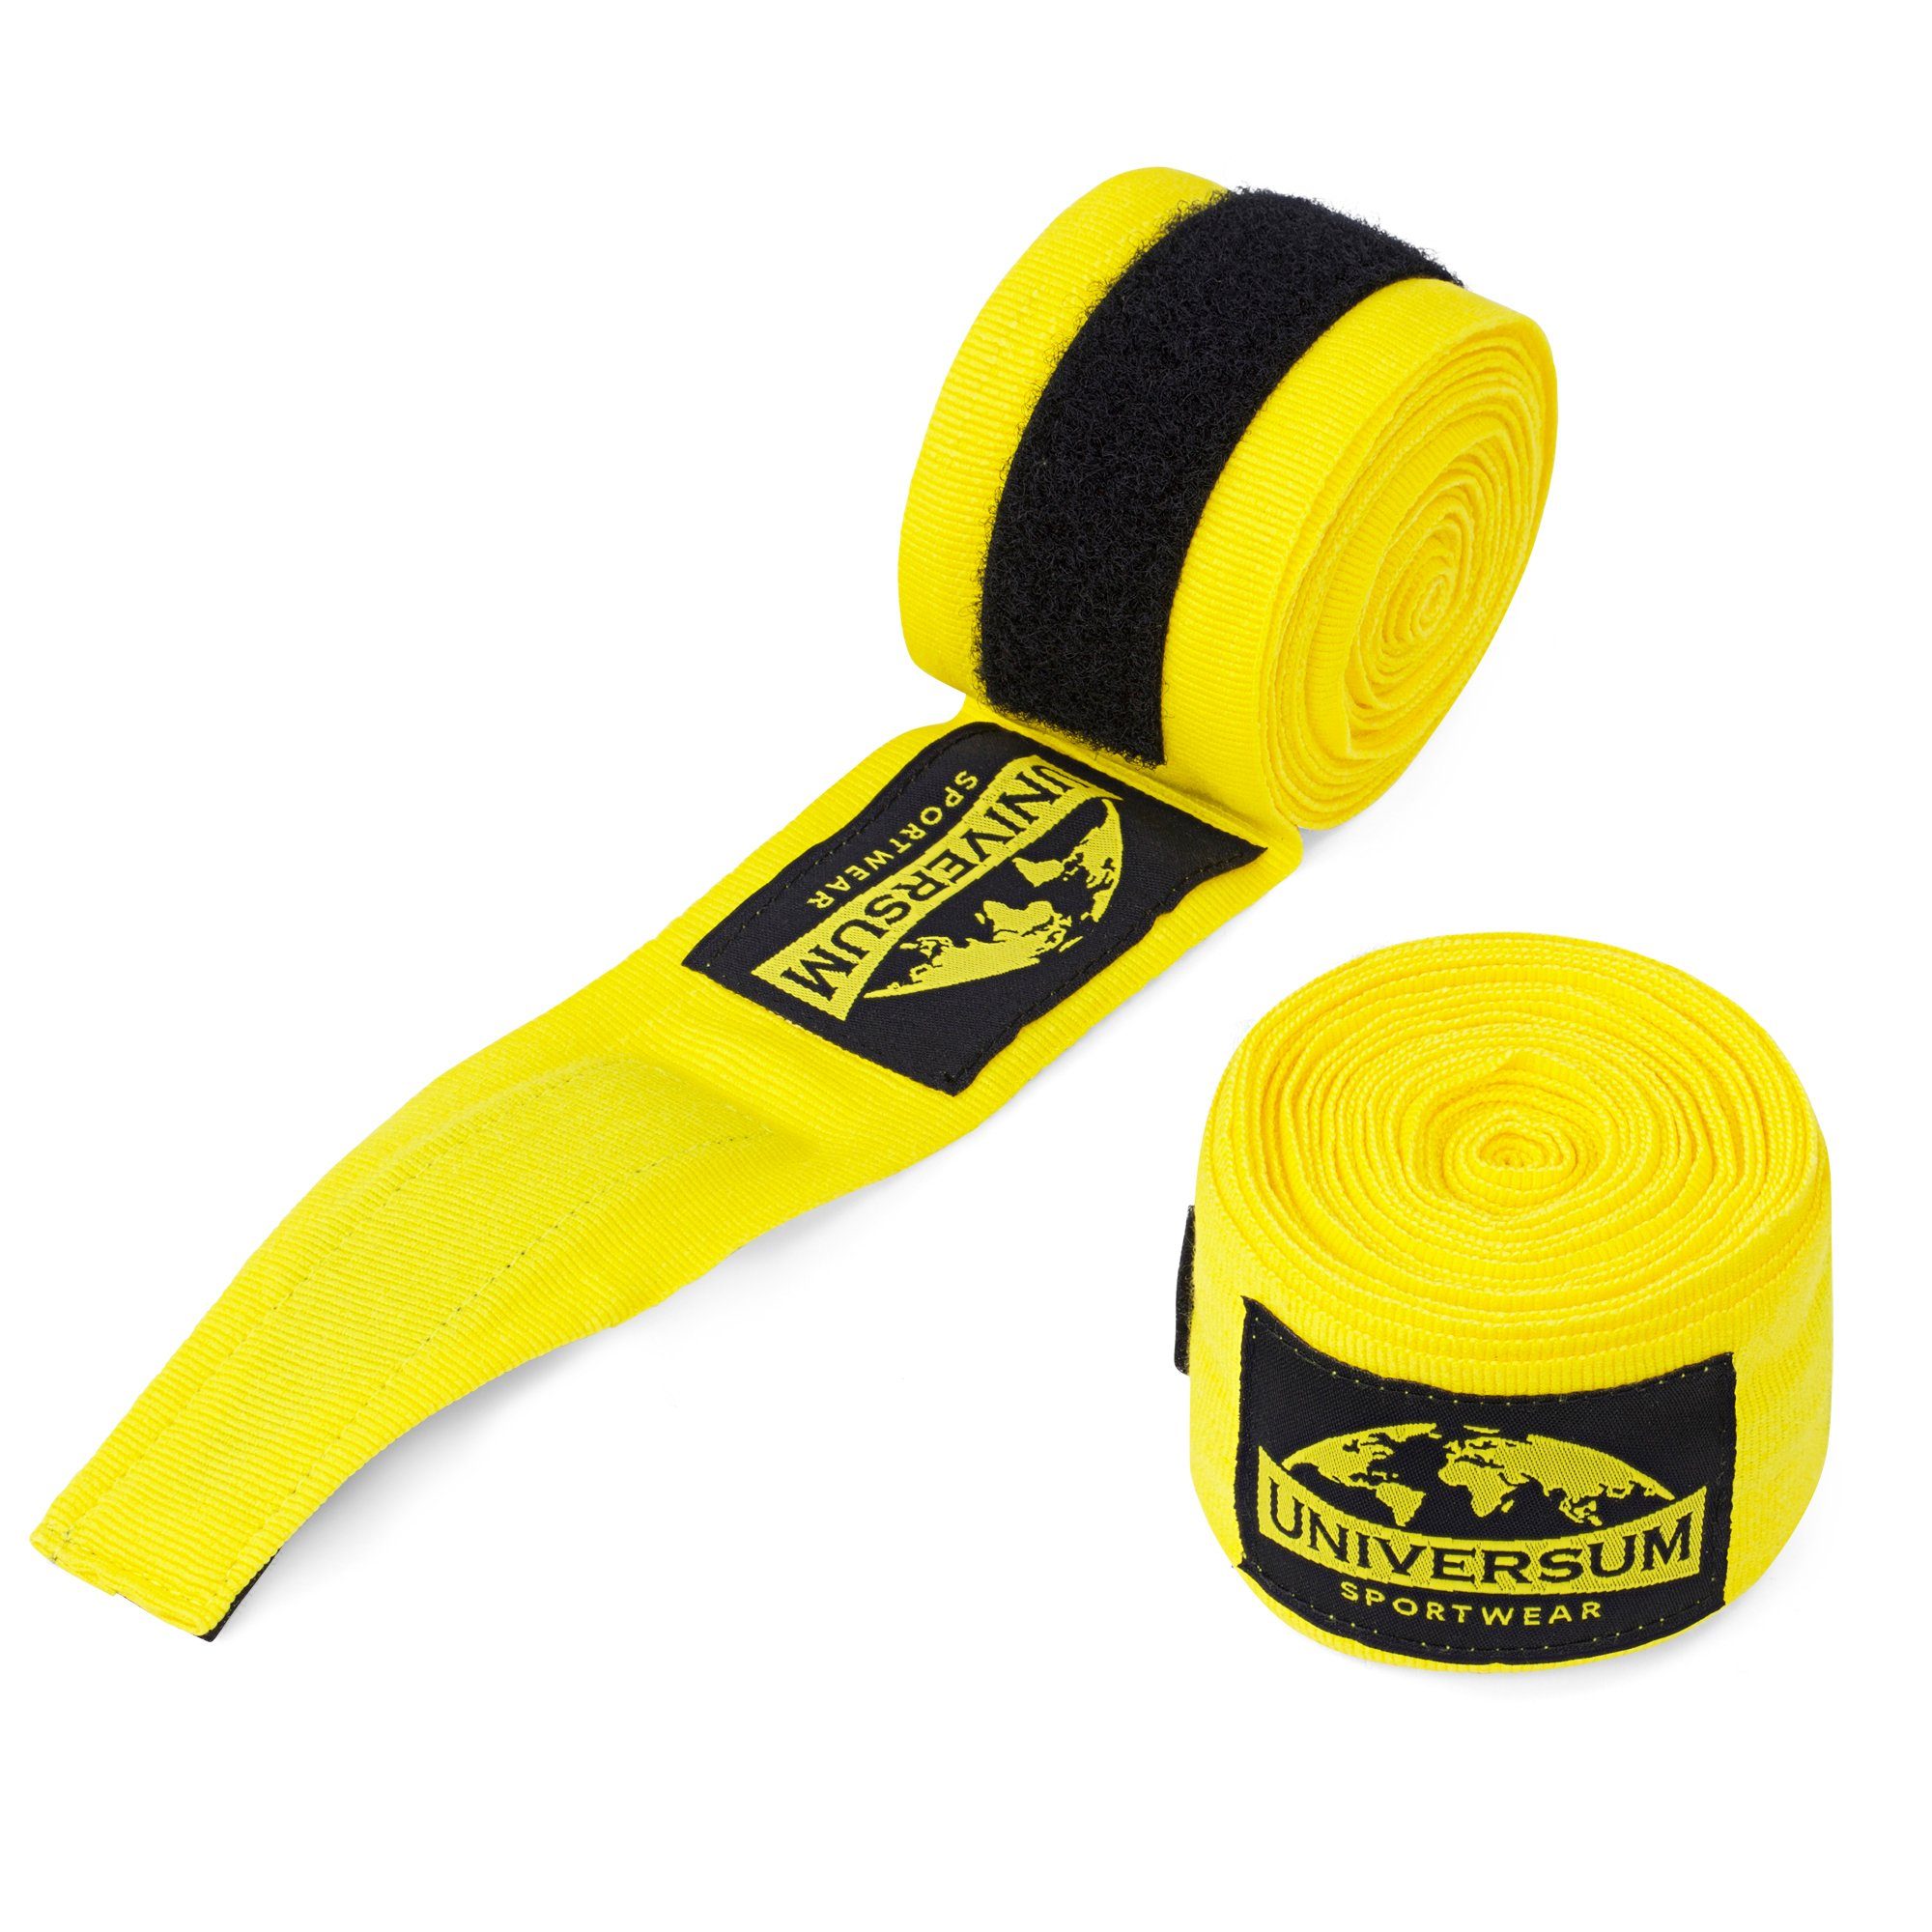 Gelb-Schwarz Sportwear Bandage, Handgelenk mit Boxbandagen Universum Klettverschluss langen